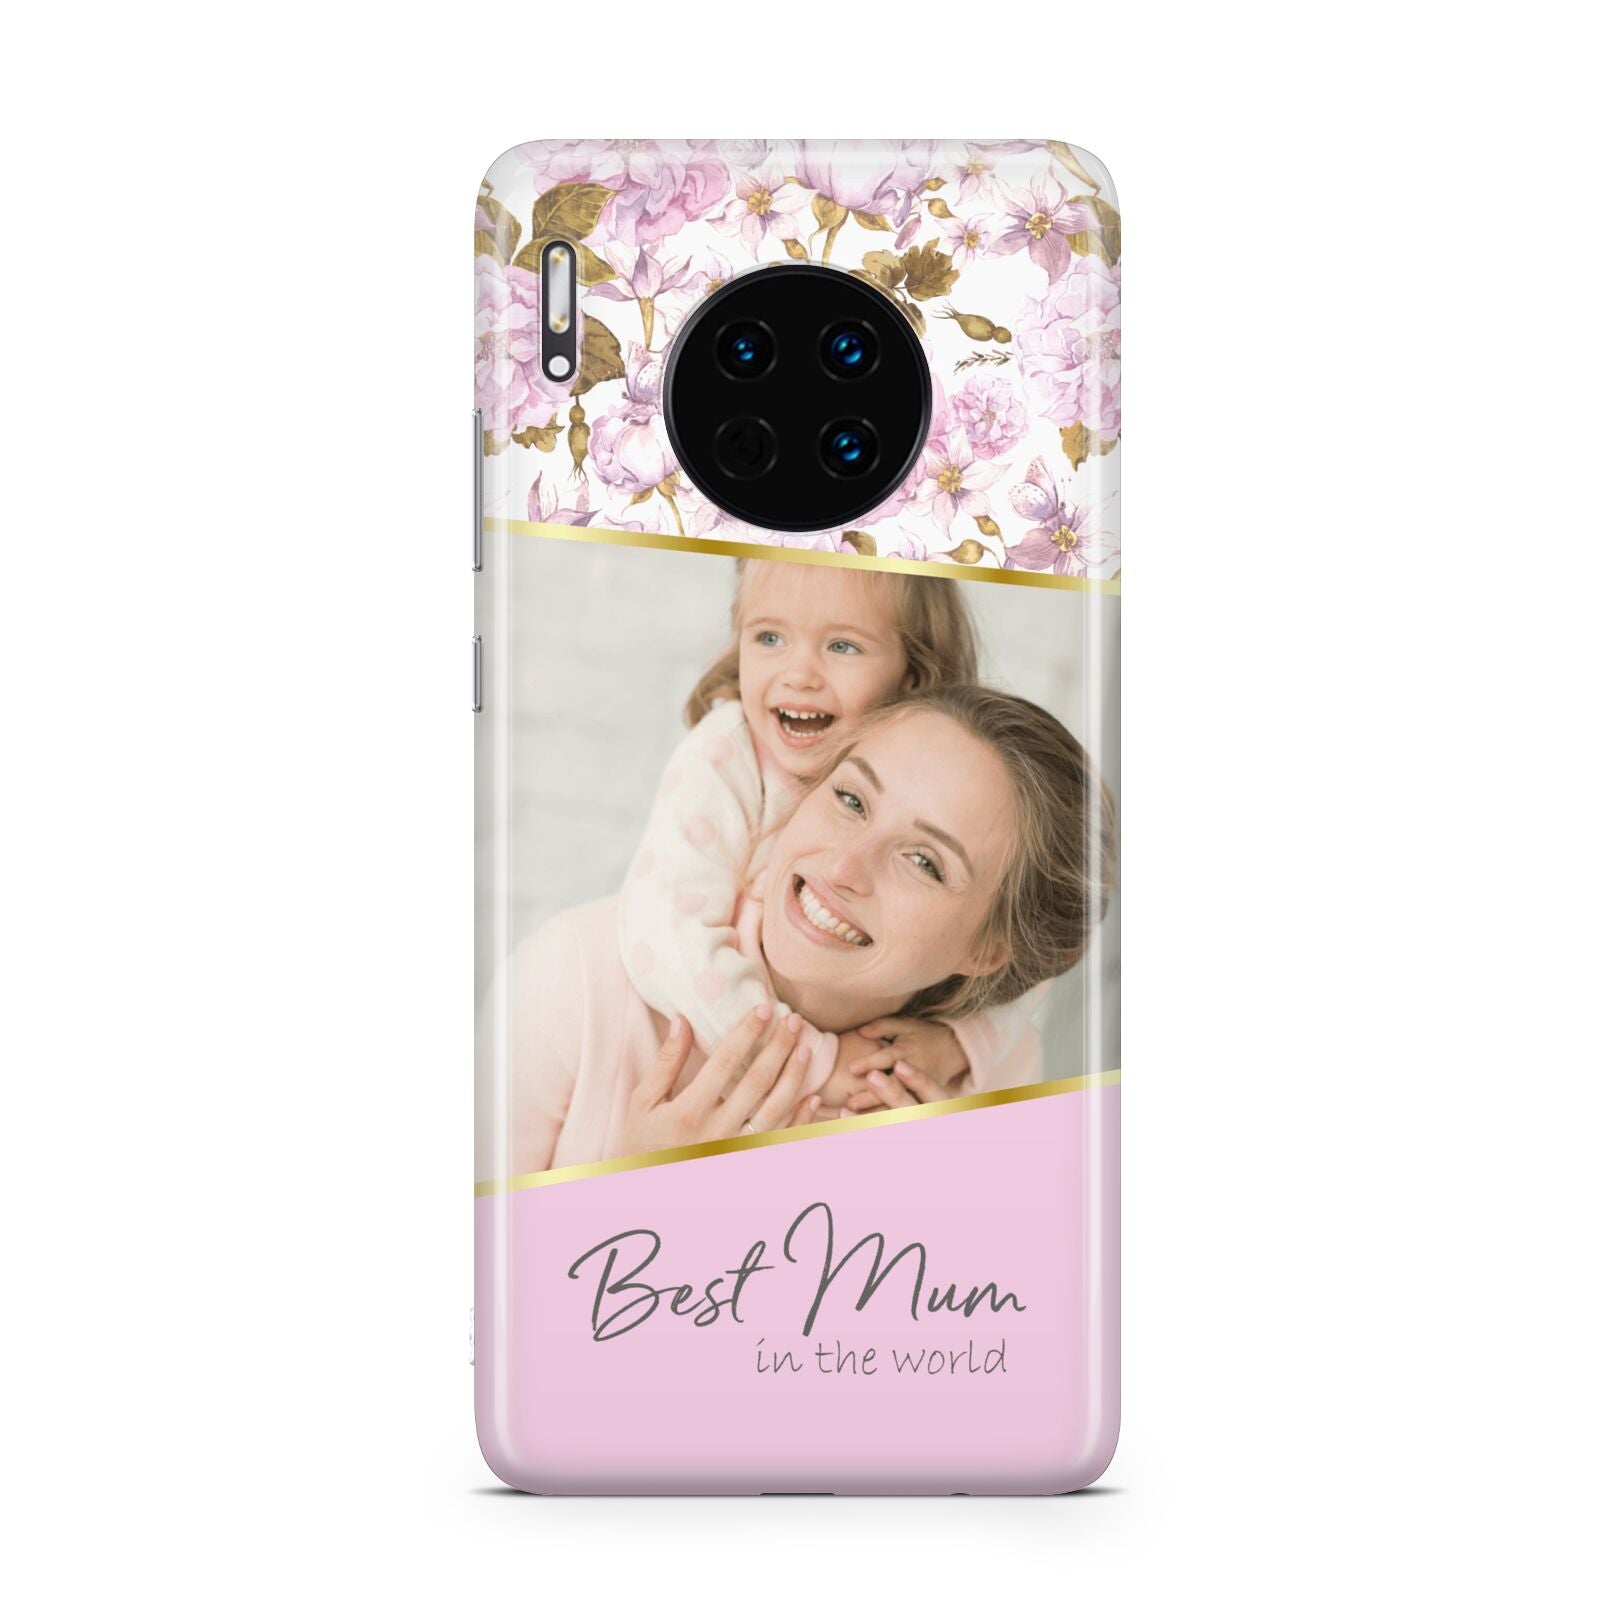 Personalised Love You Mum Huawei Mate 30